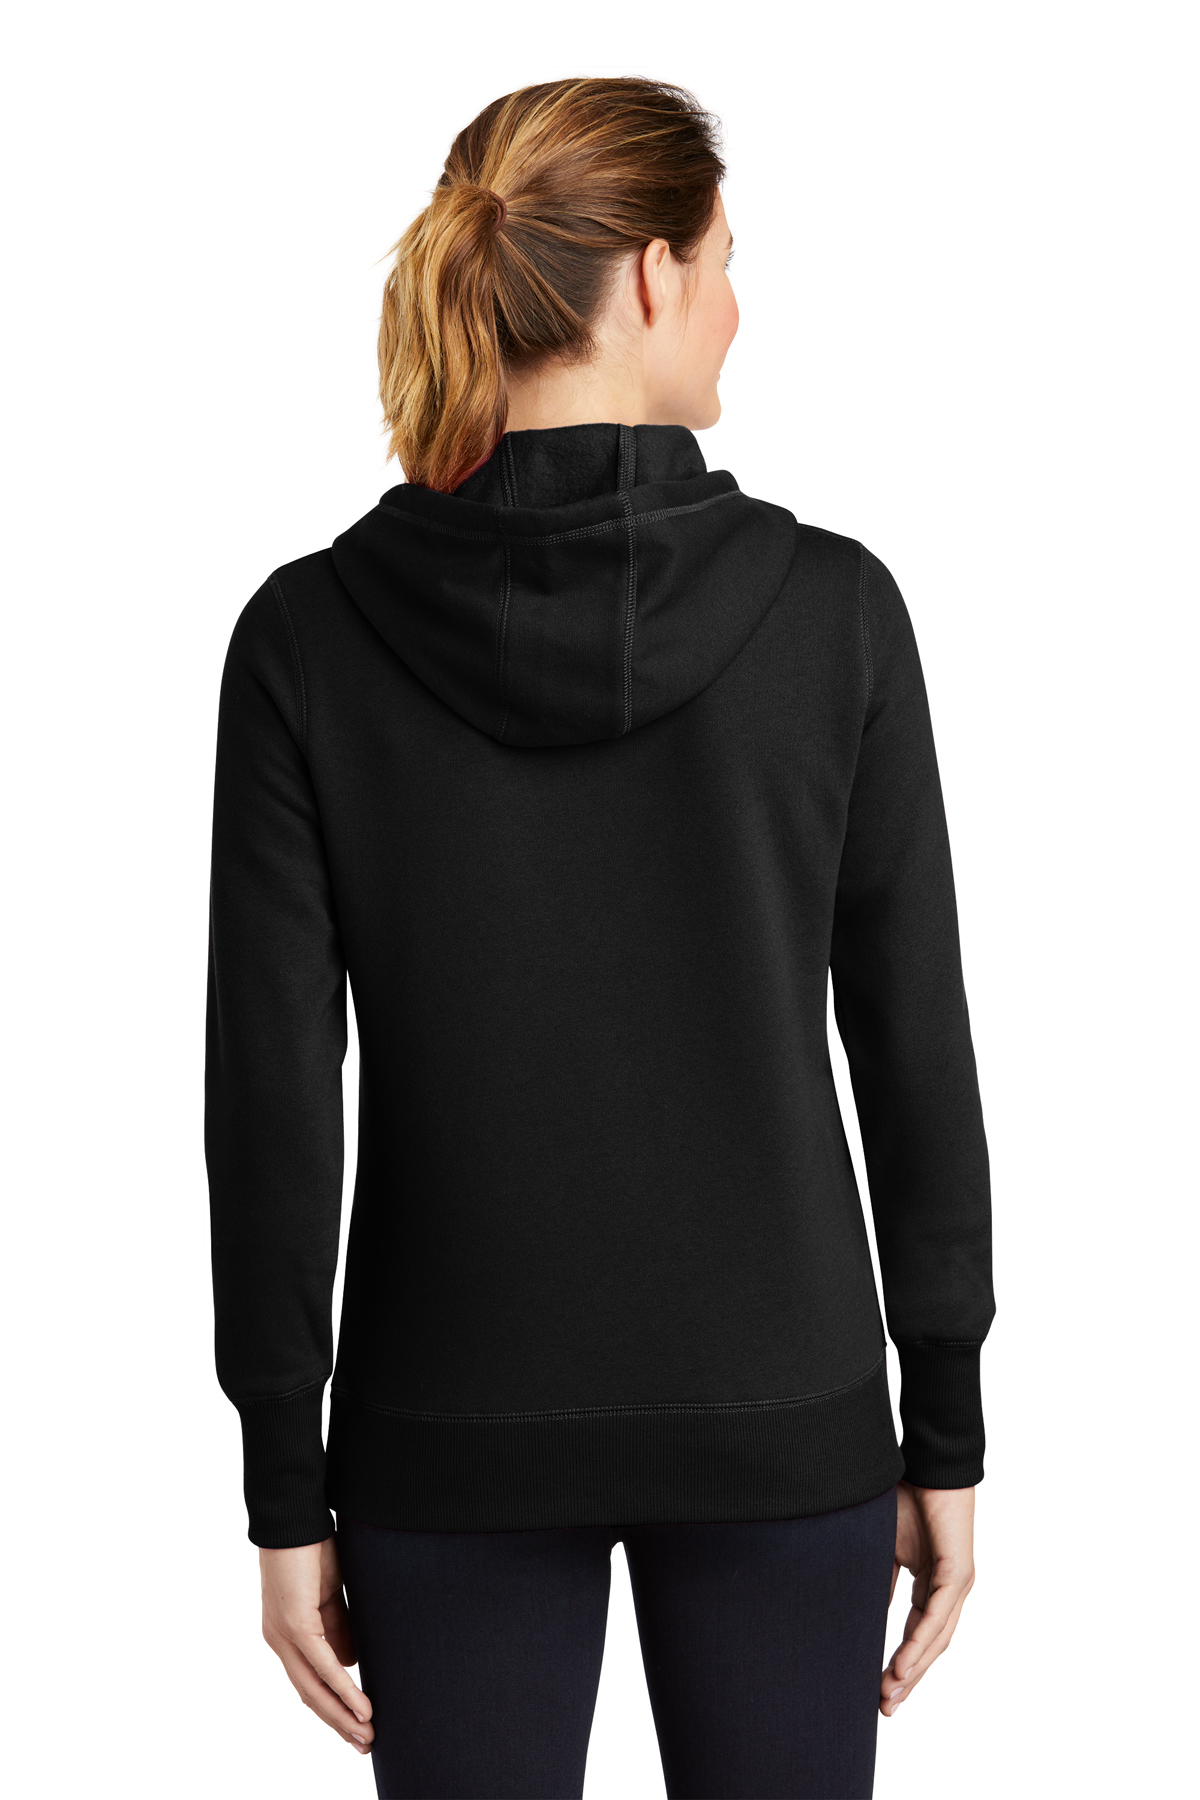 Sport-Tek Ladies Pullover Hooded | | Product Sweatshirt Sport-Tek